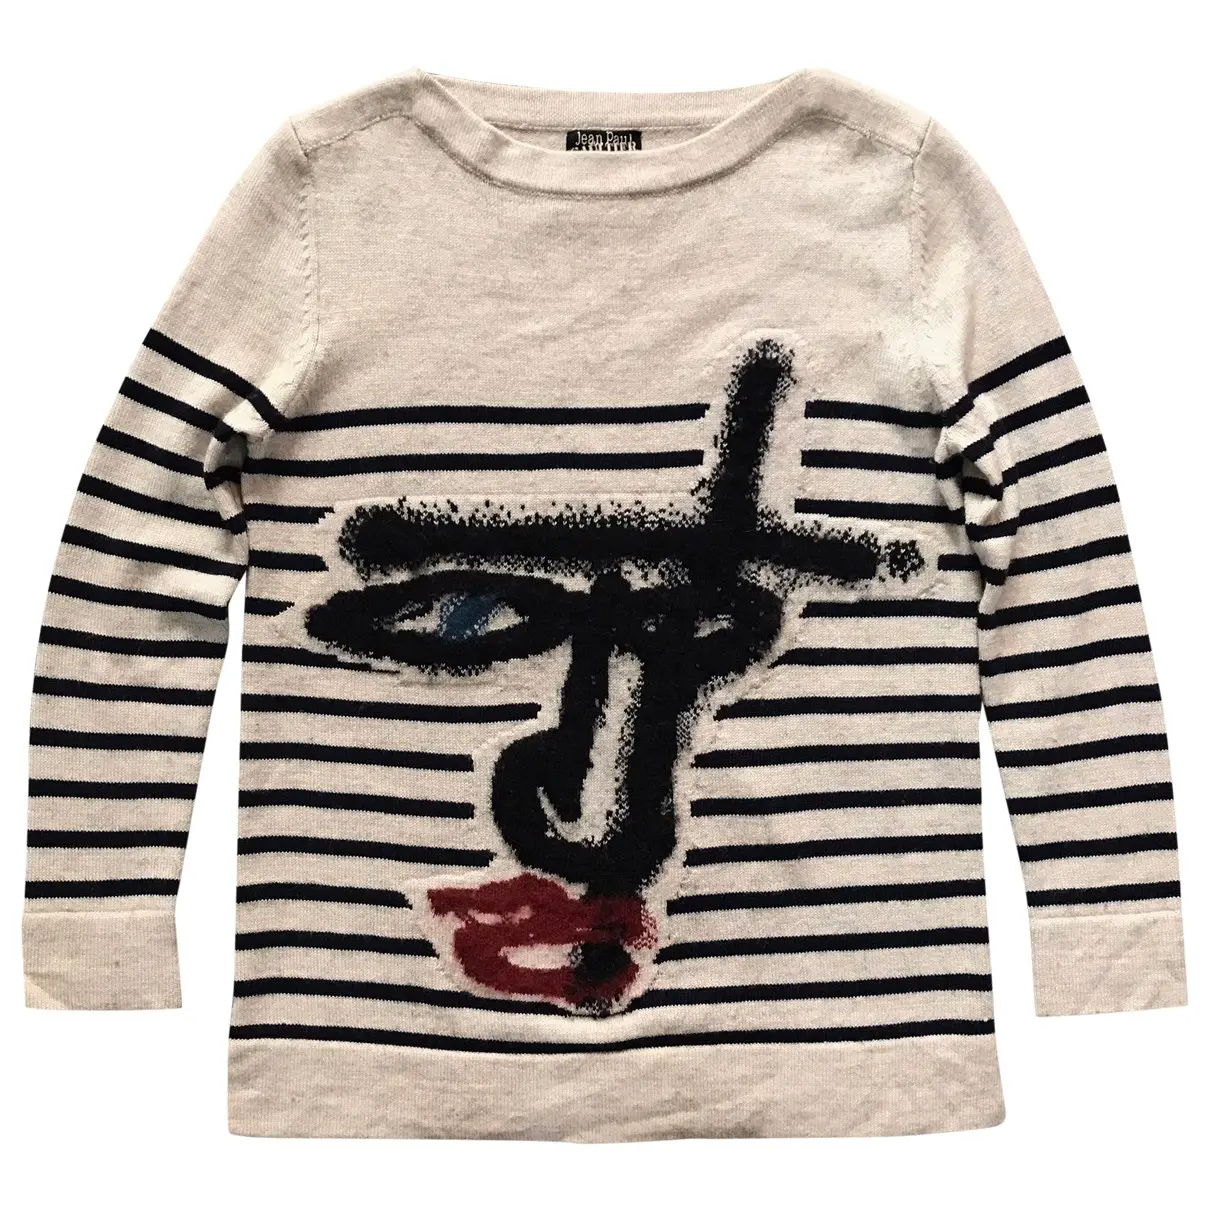 Wool sweatshirt Jean Paul Gaultier